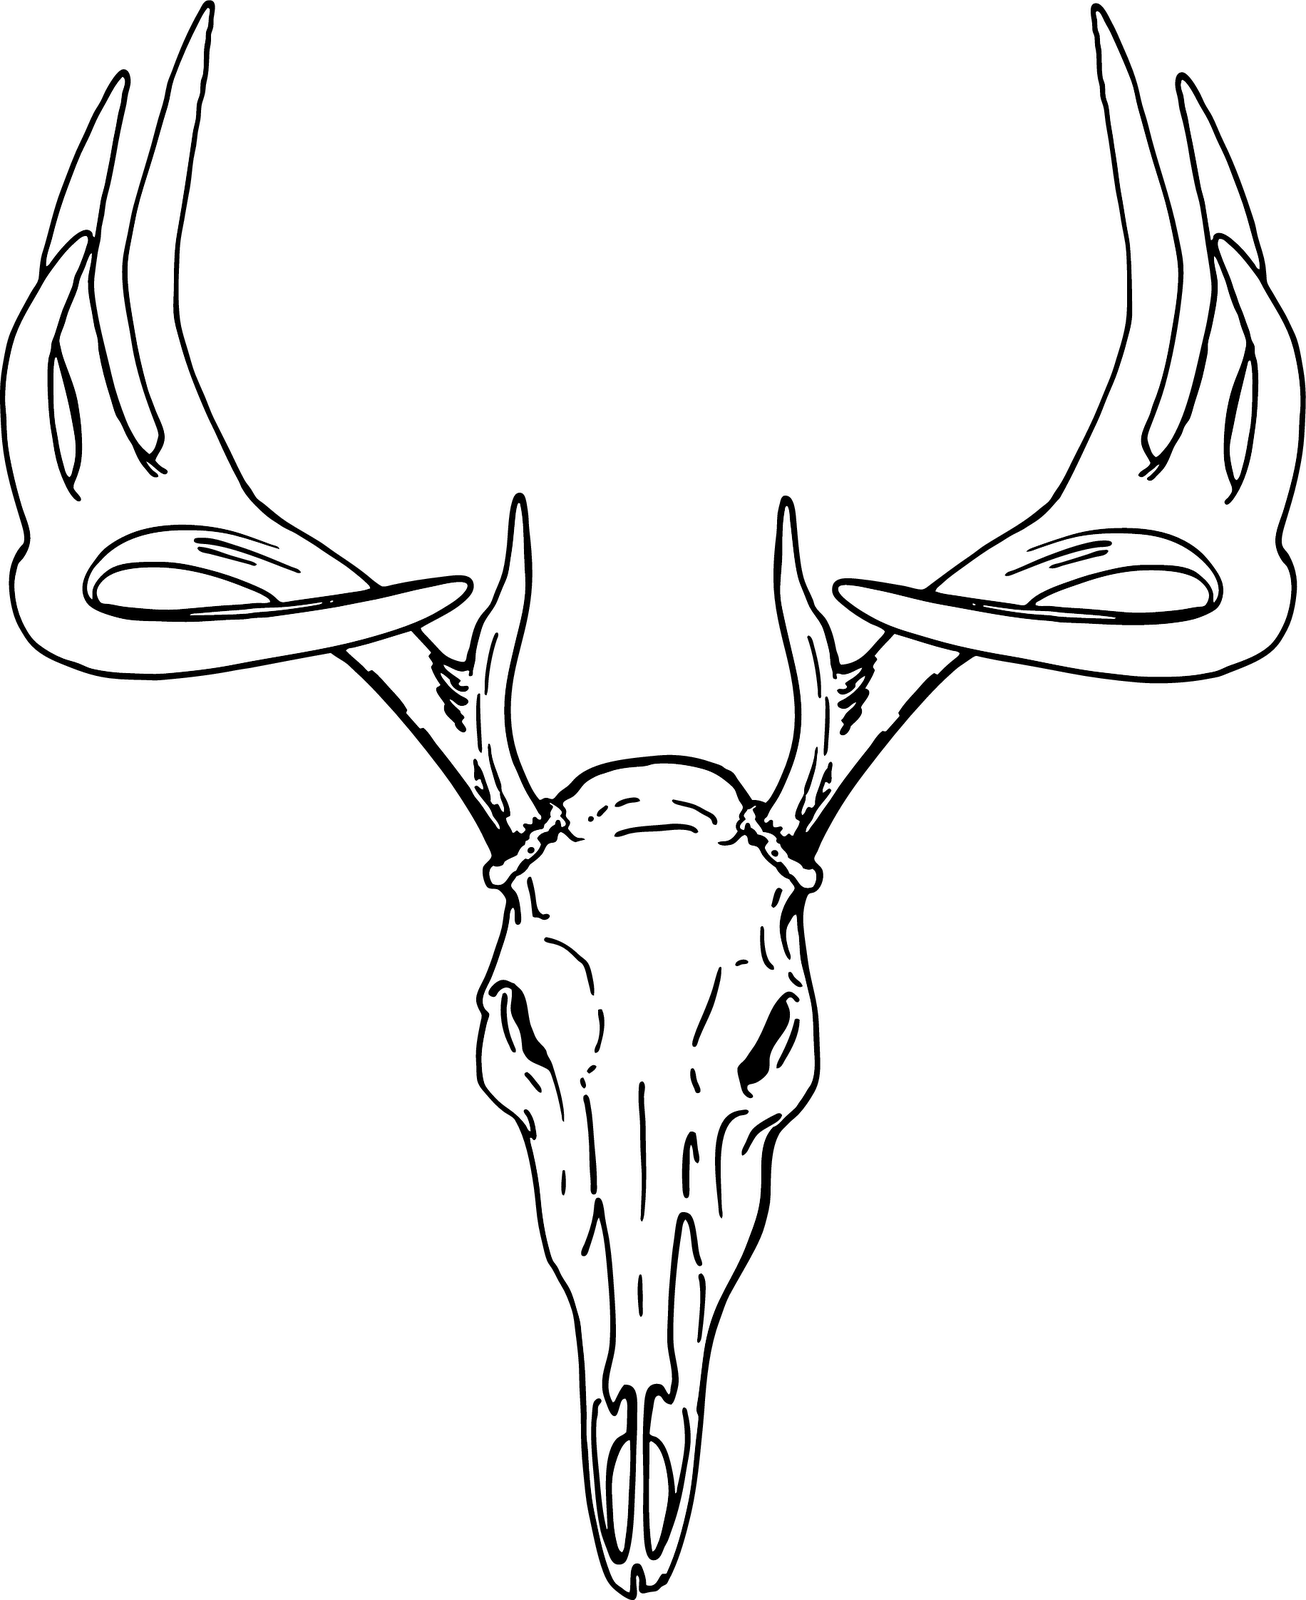 Deer drawing at getdrawings. Antlers clipart sketch